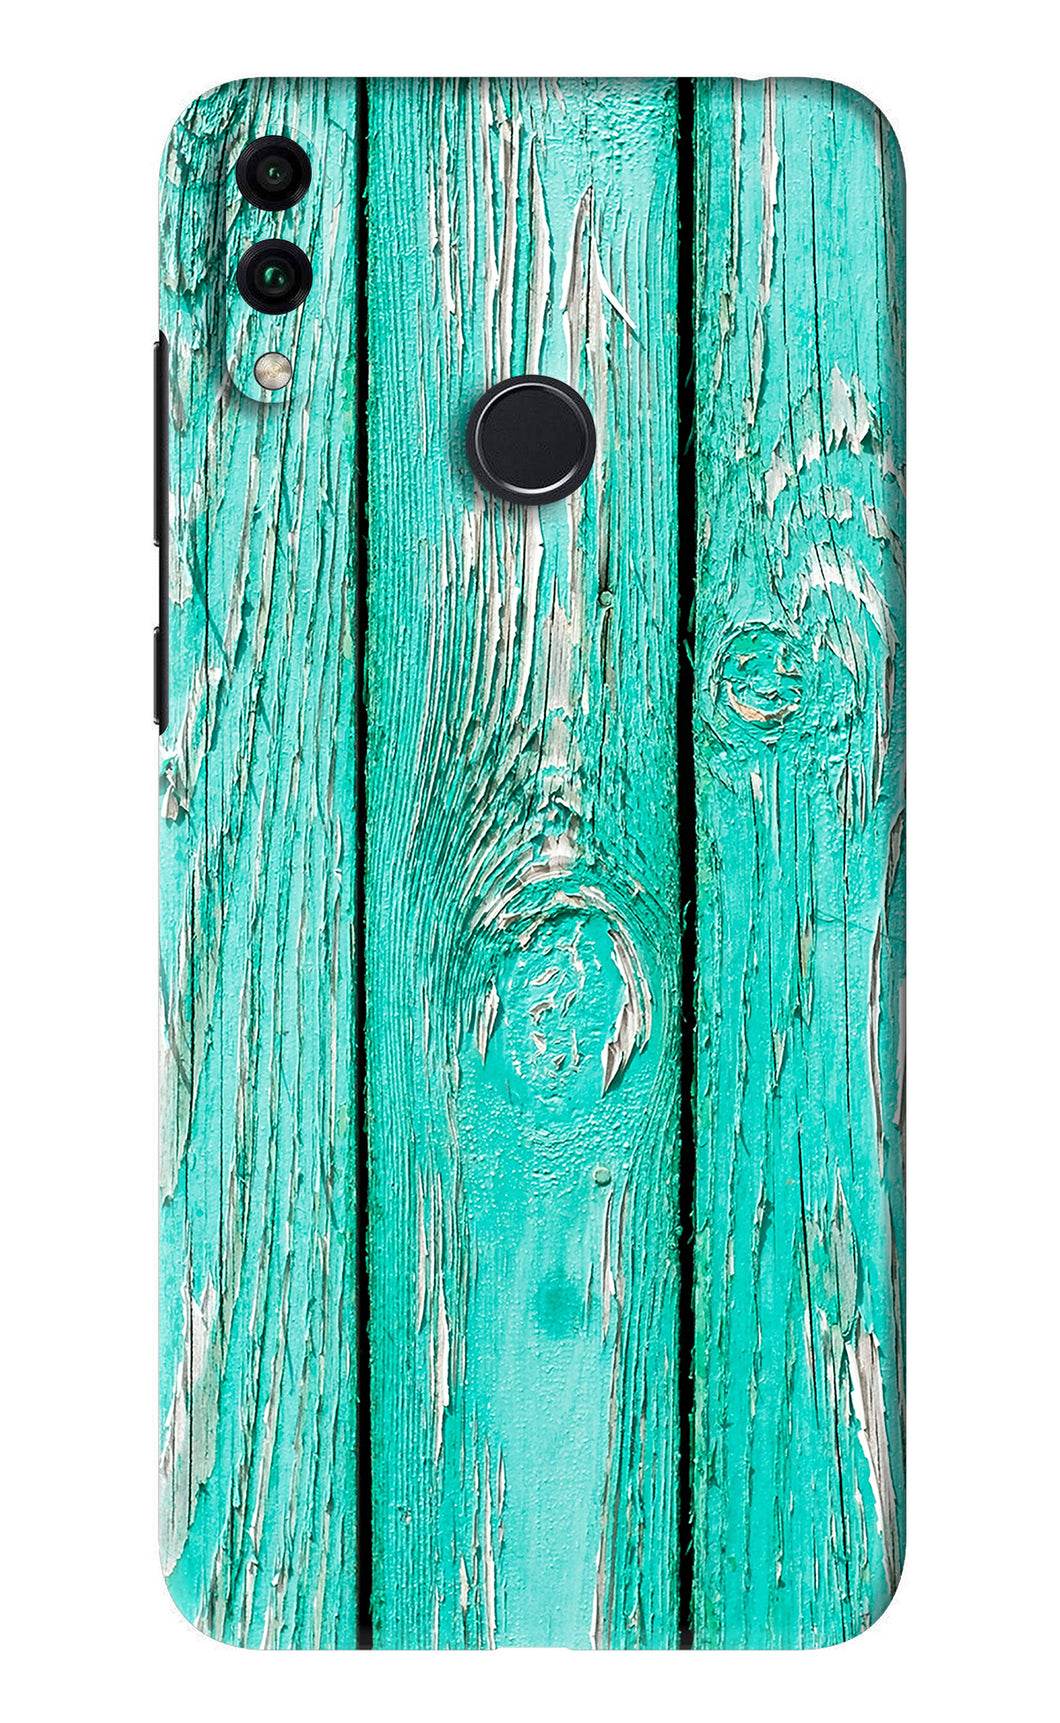 Blue Wood Huawei Honor 8C Back Skin Wrap